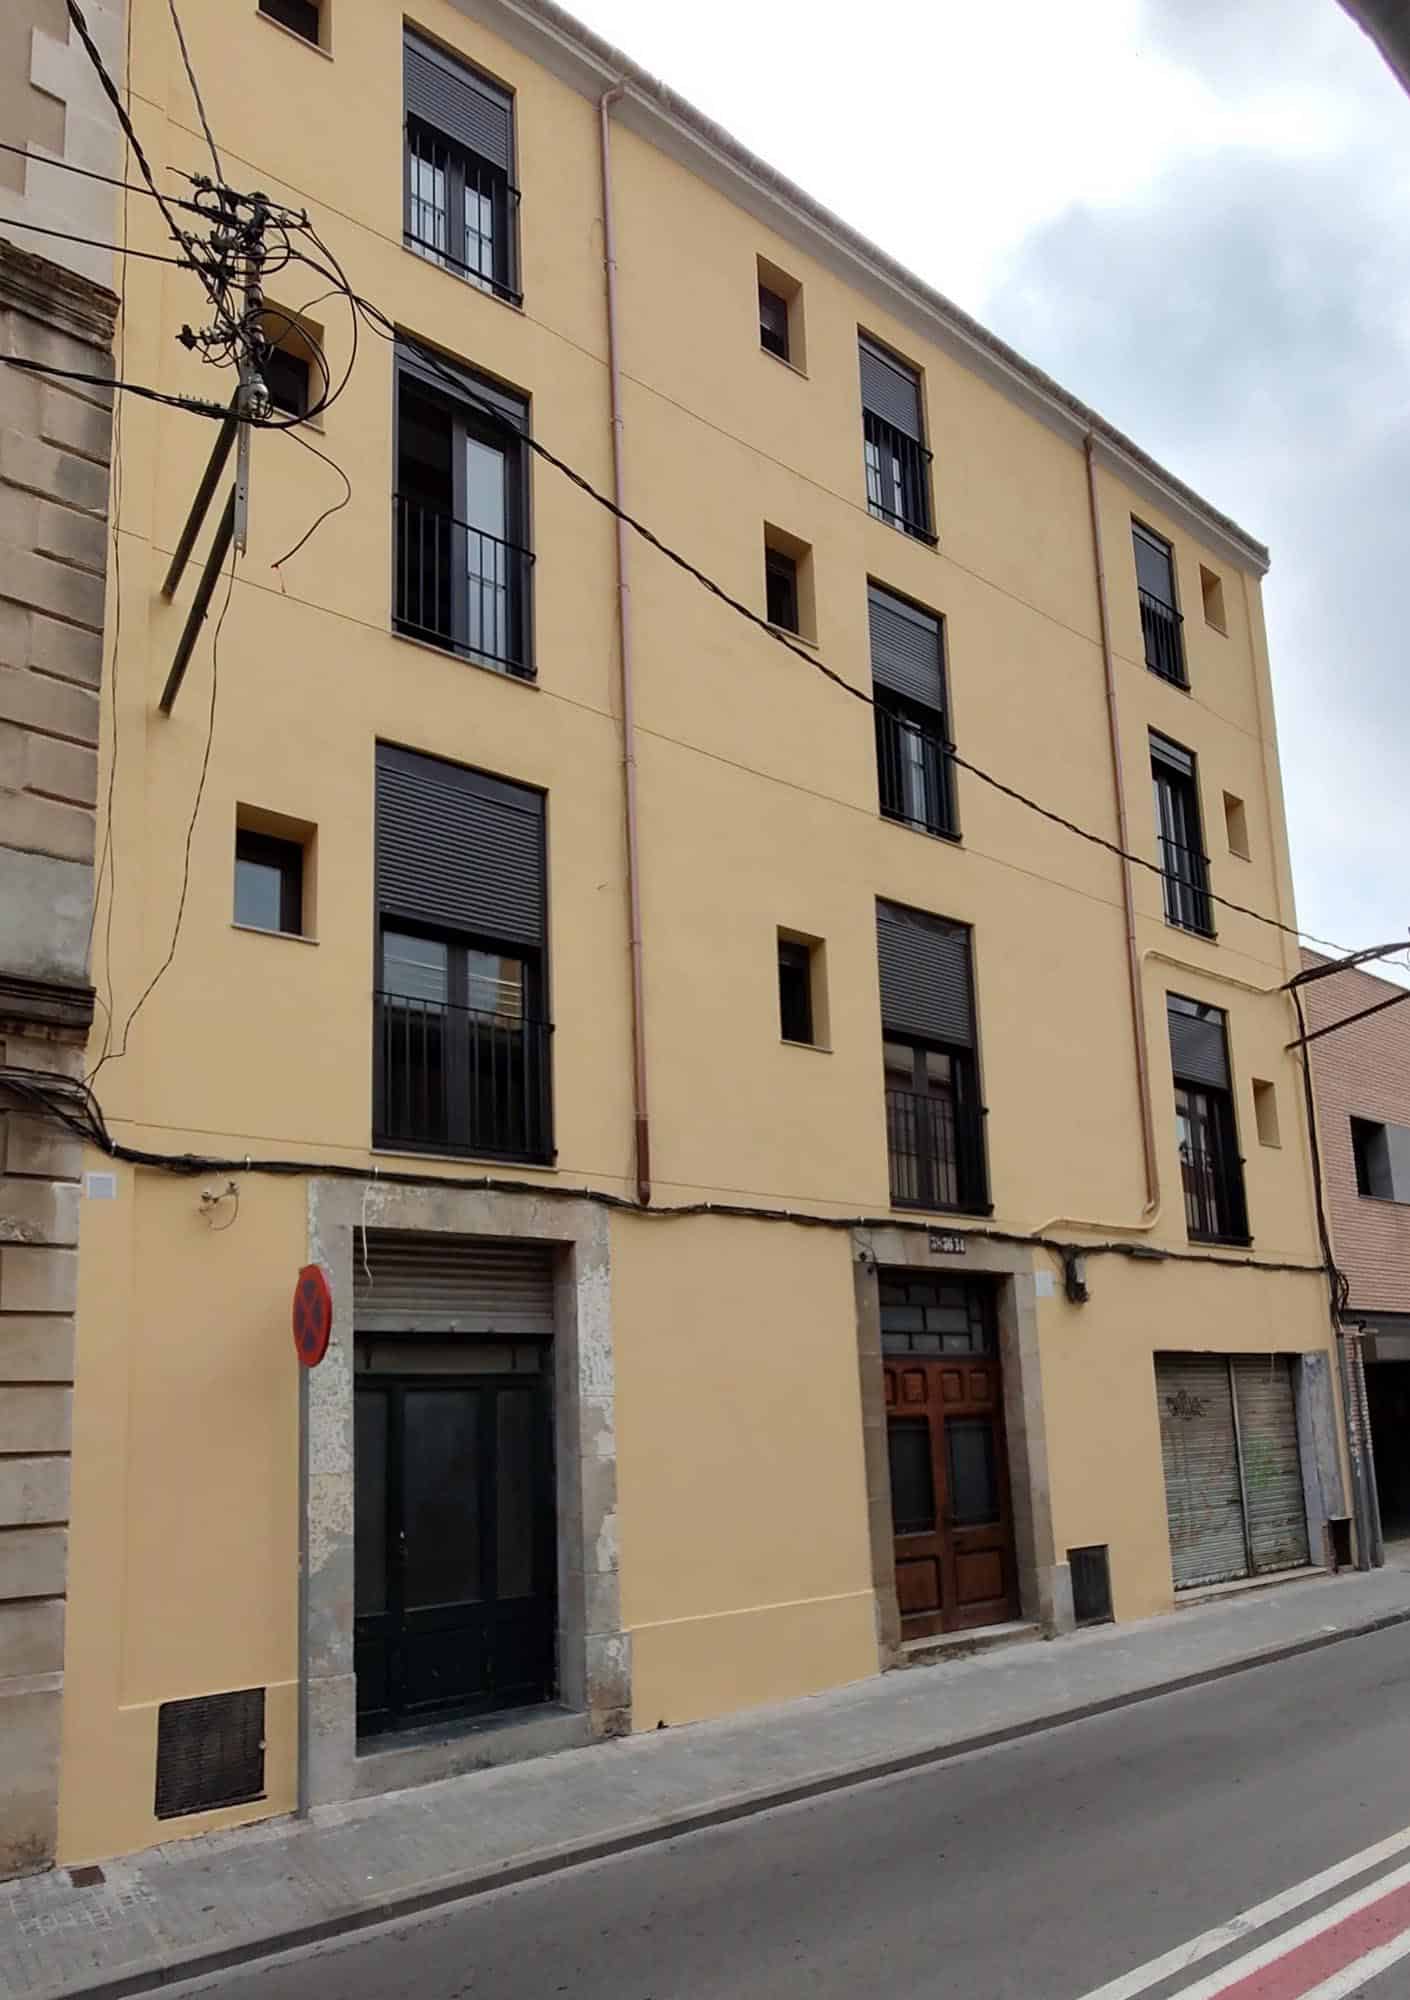 Rehabilitació fachada a Terrassa - Marc Vidal - Arquitecte tècnic